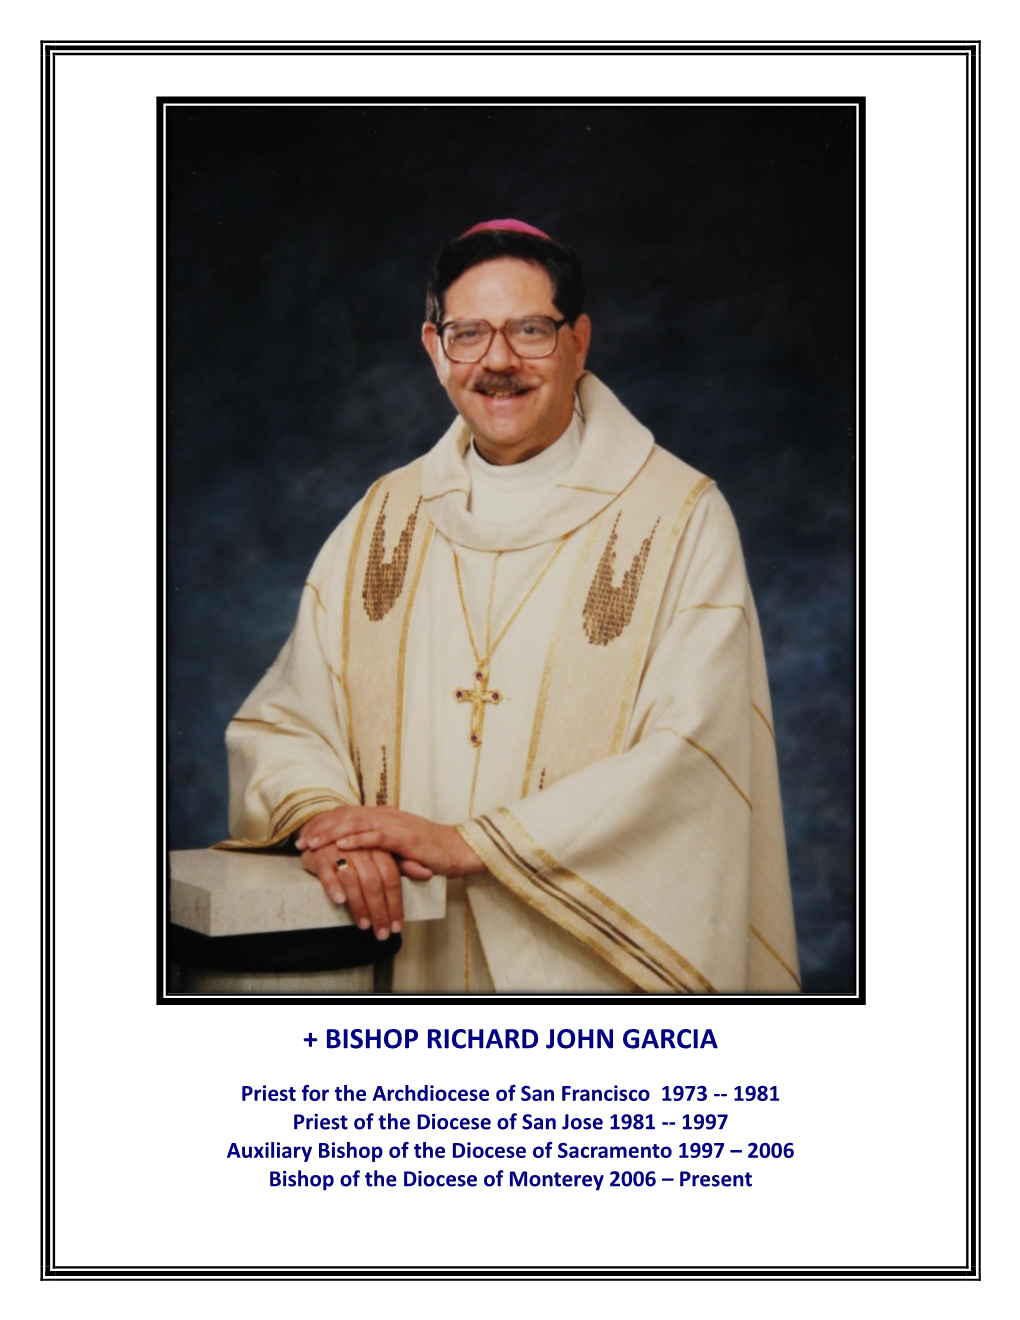 + Bishop Richard John Garcia